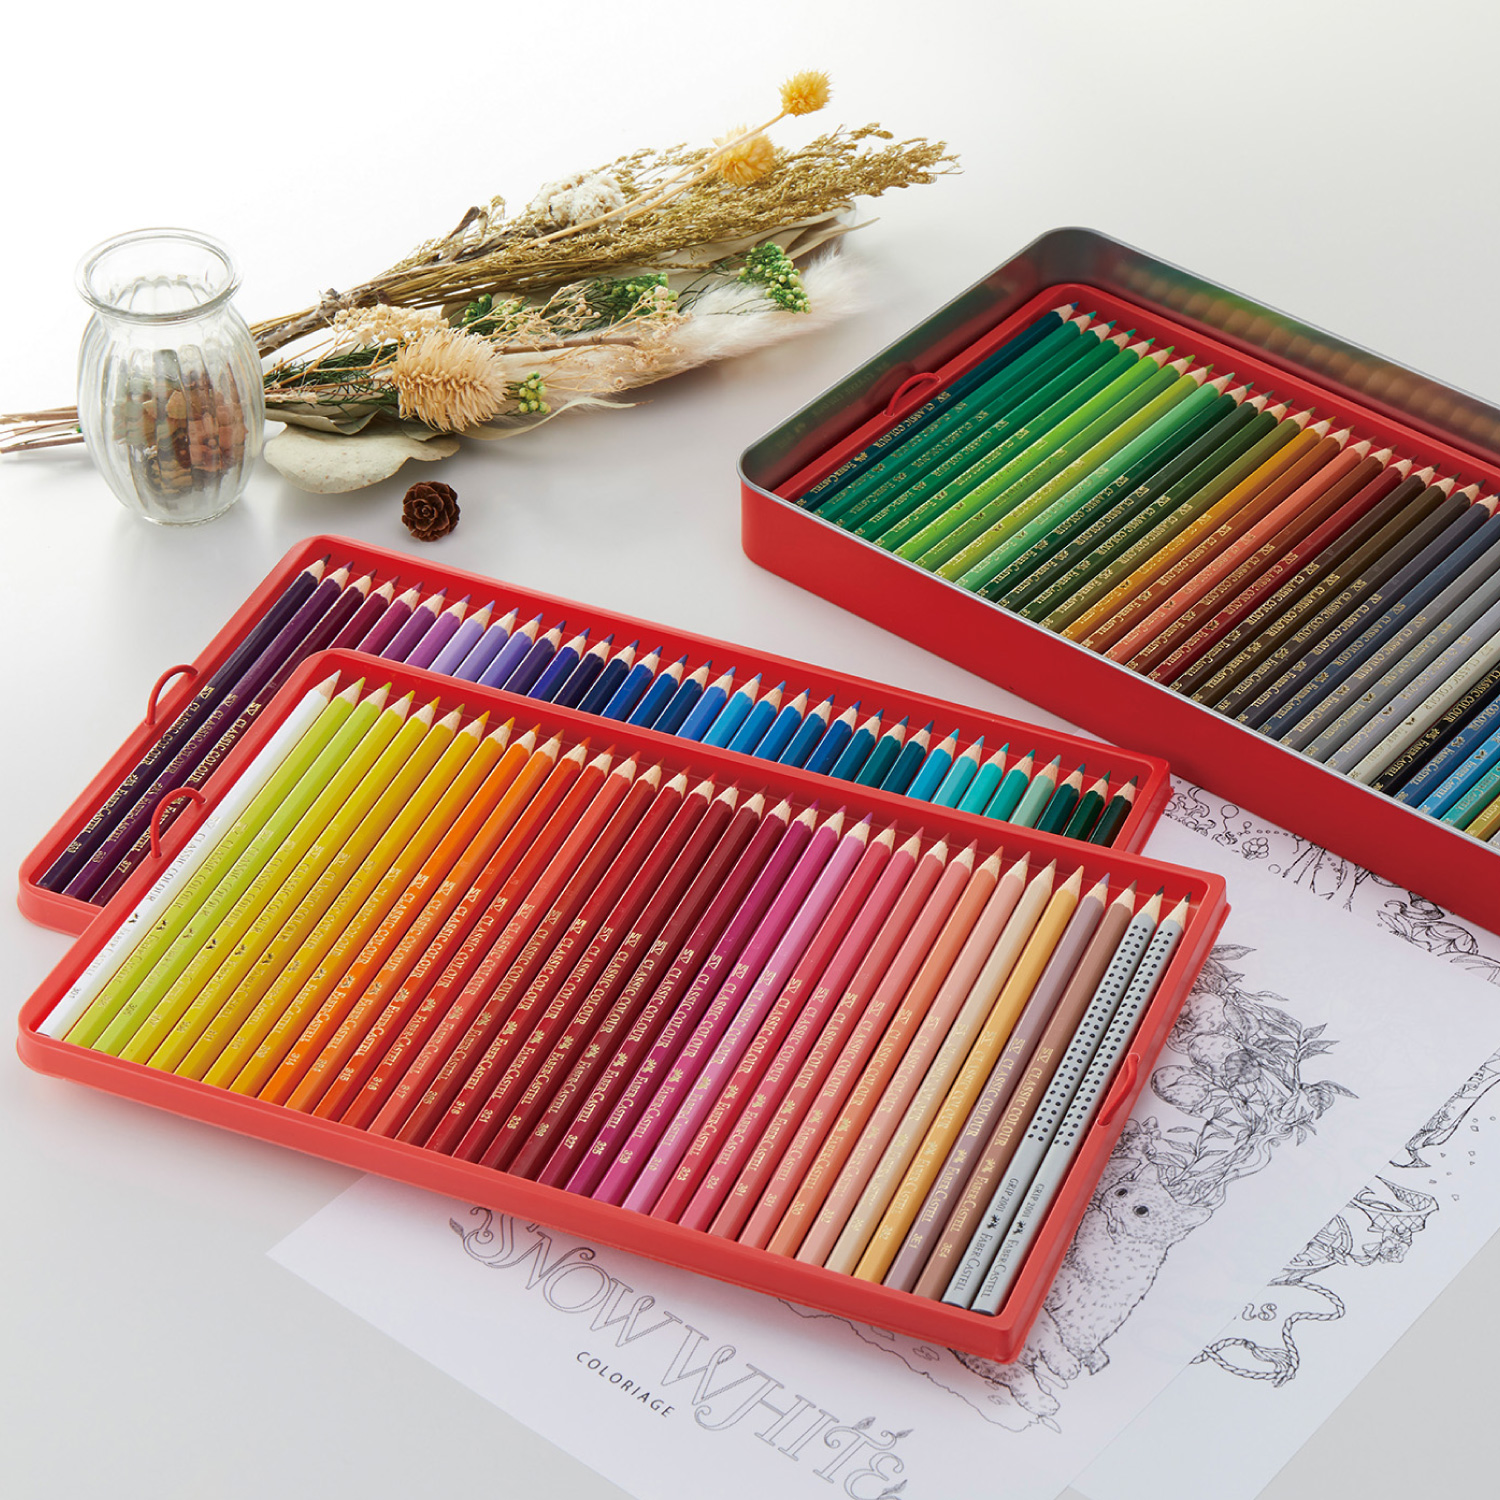 ファーバーカステル 色鉛筆 100色セット|TFC-CP/100C|商品カタログ 